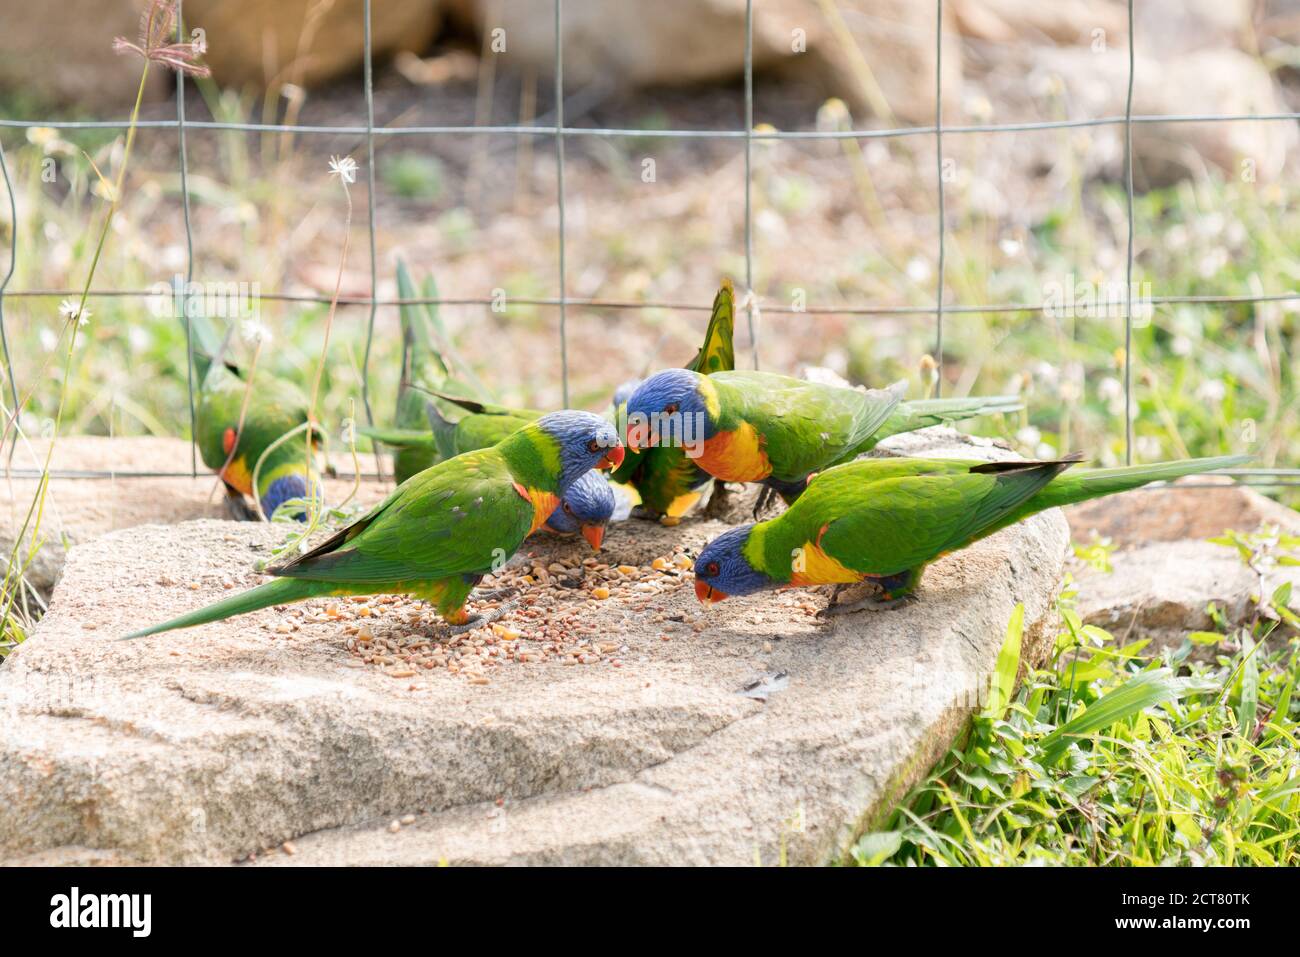 Gruppo di fauna australiana nativa corikeet arcobaleno, Trichoglossus moluccanus, mangiare semi su roccia giardino Foto Stock